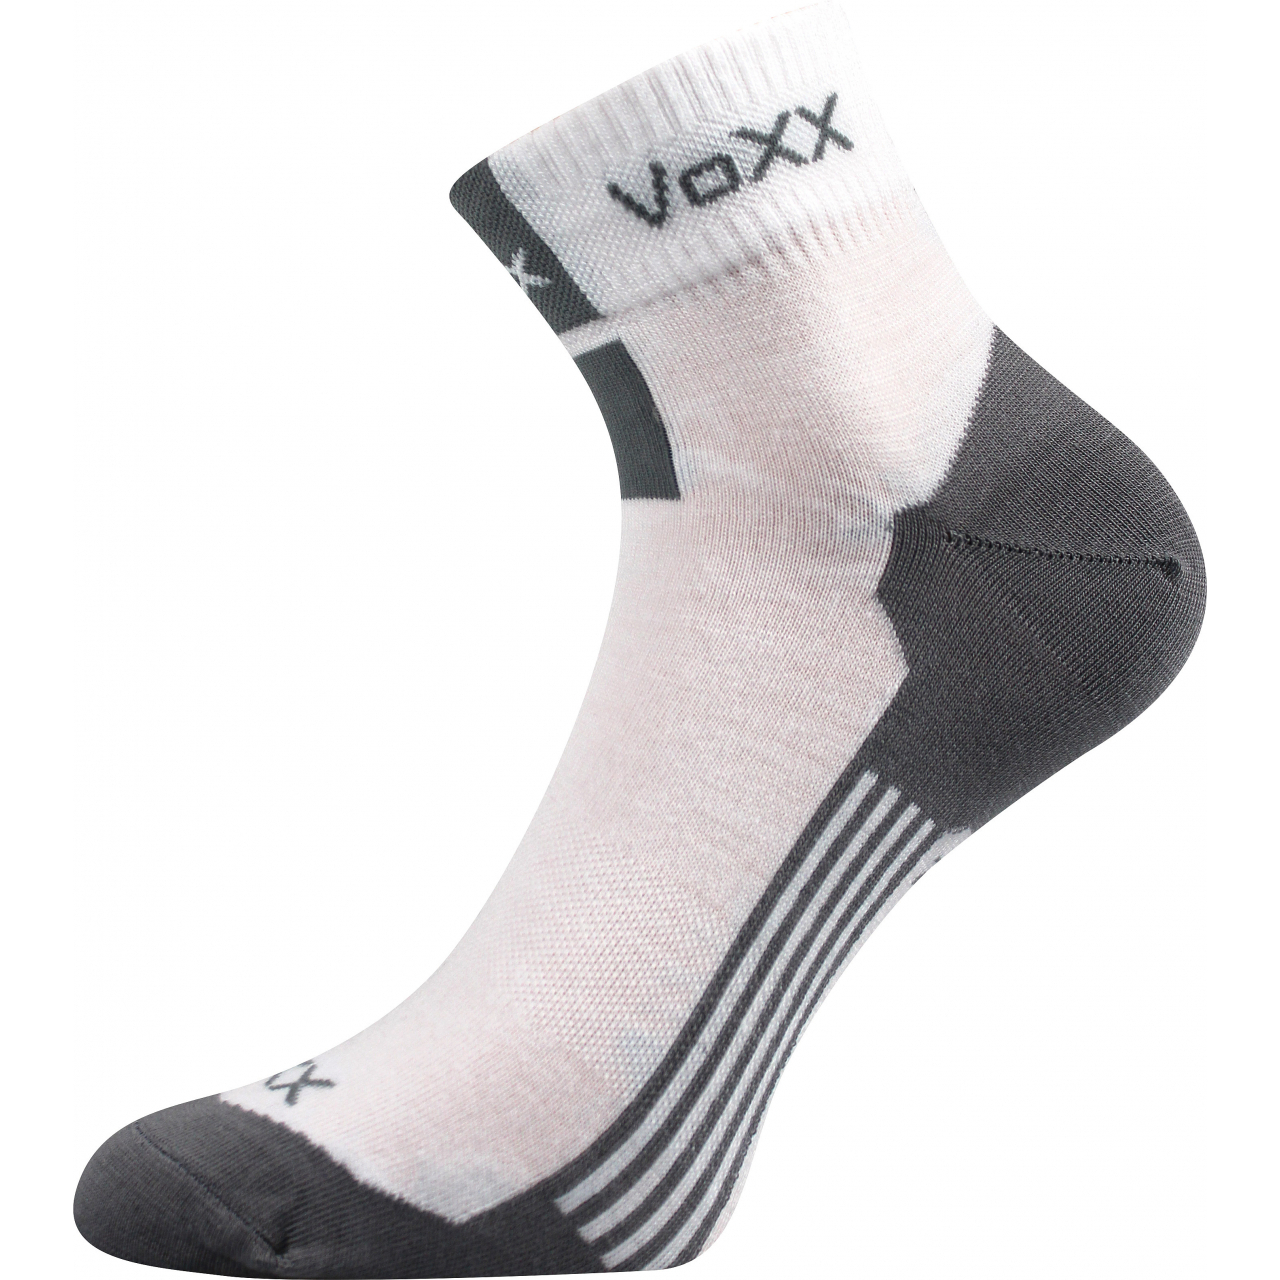 Ponožky unisex klasické Voxx Mostan silproX - bílé, 43-46